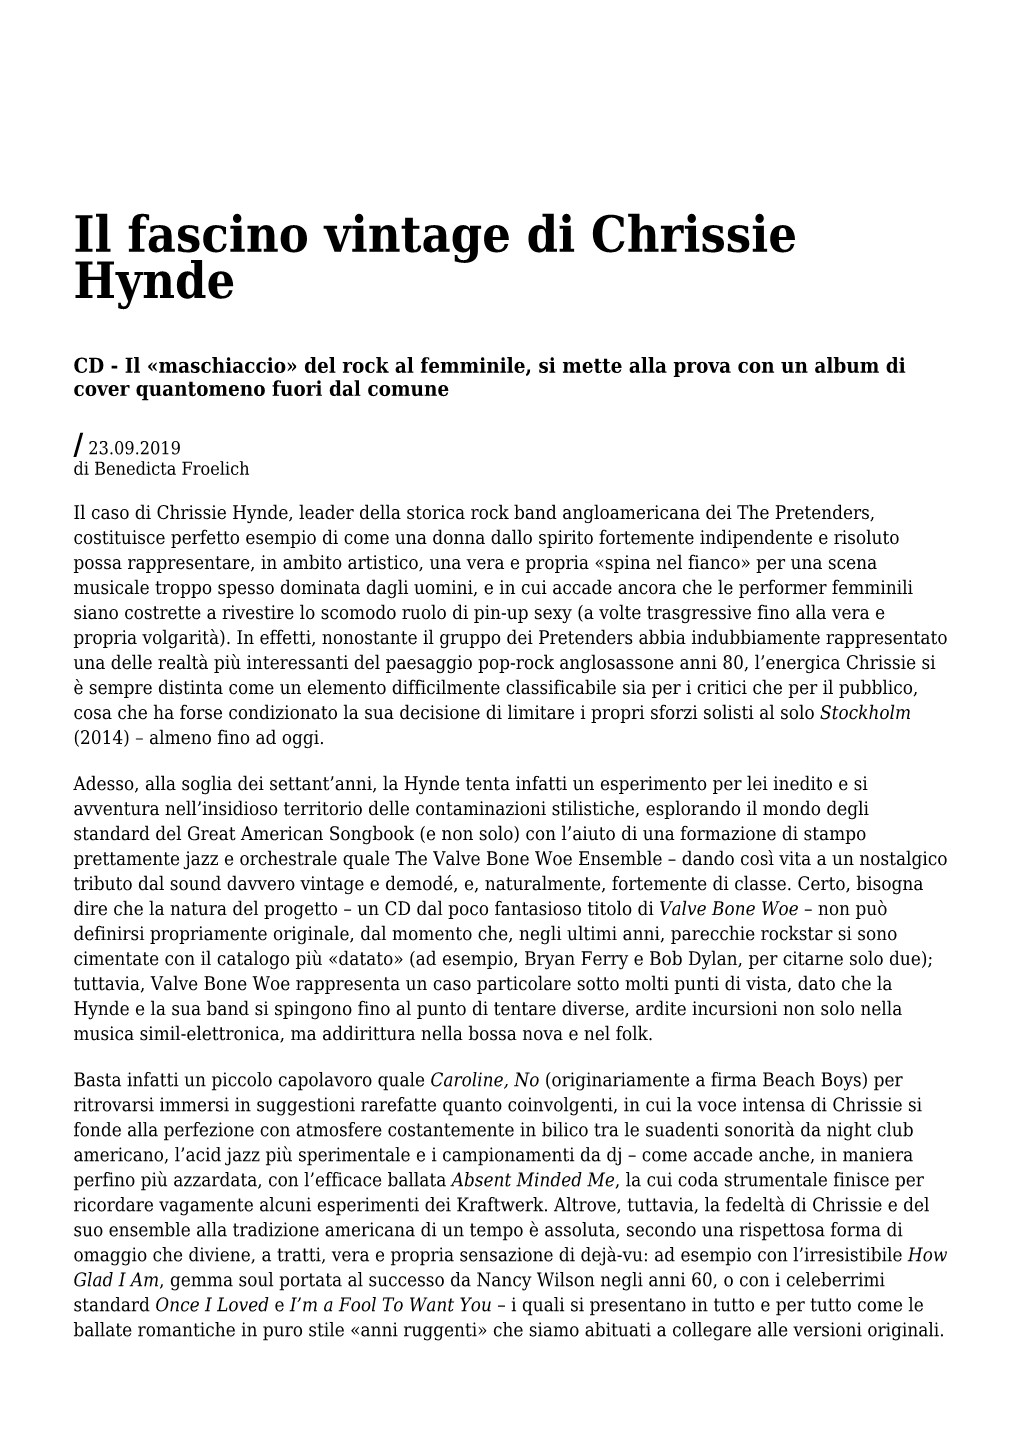 Settimanale Di Migros Ticino Il Fascino Vintage Di Chrissie Hynde